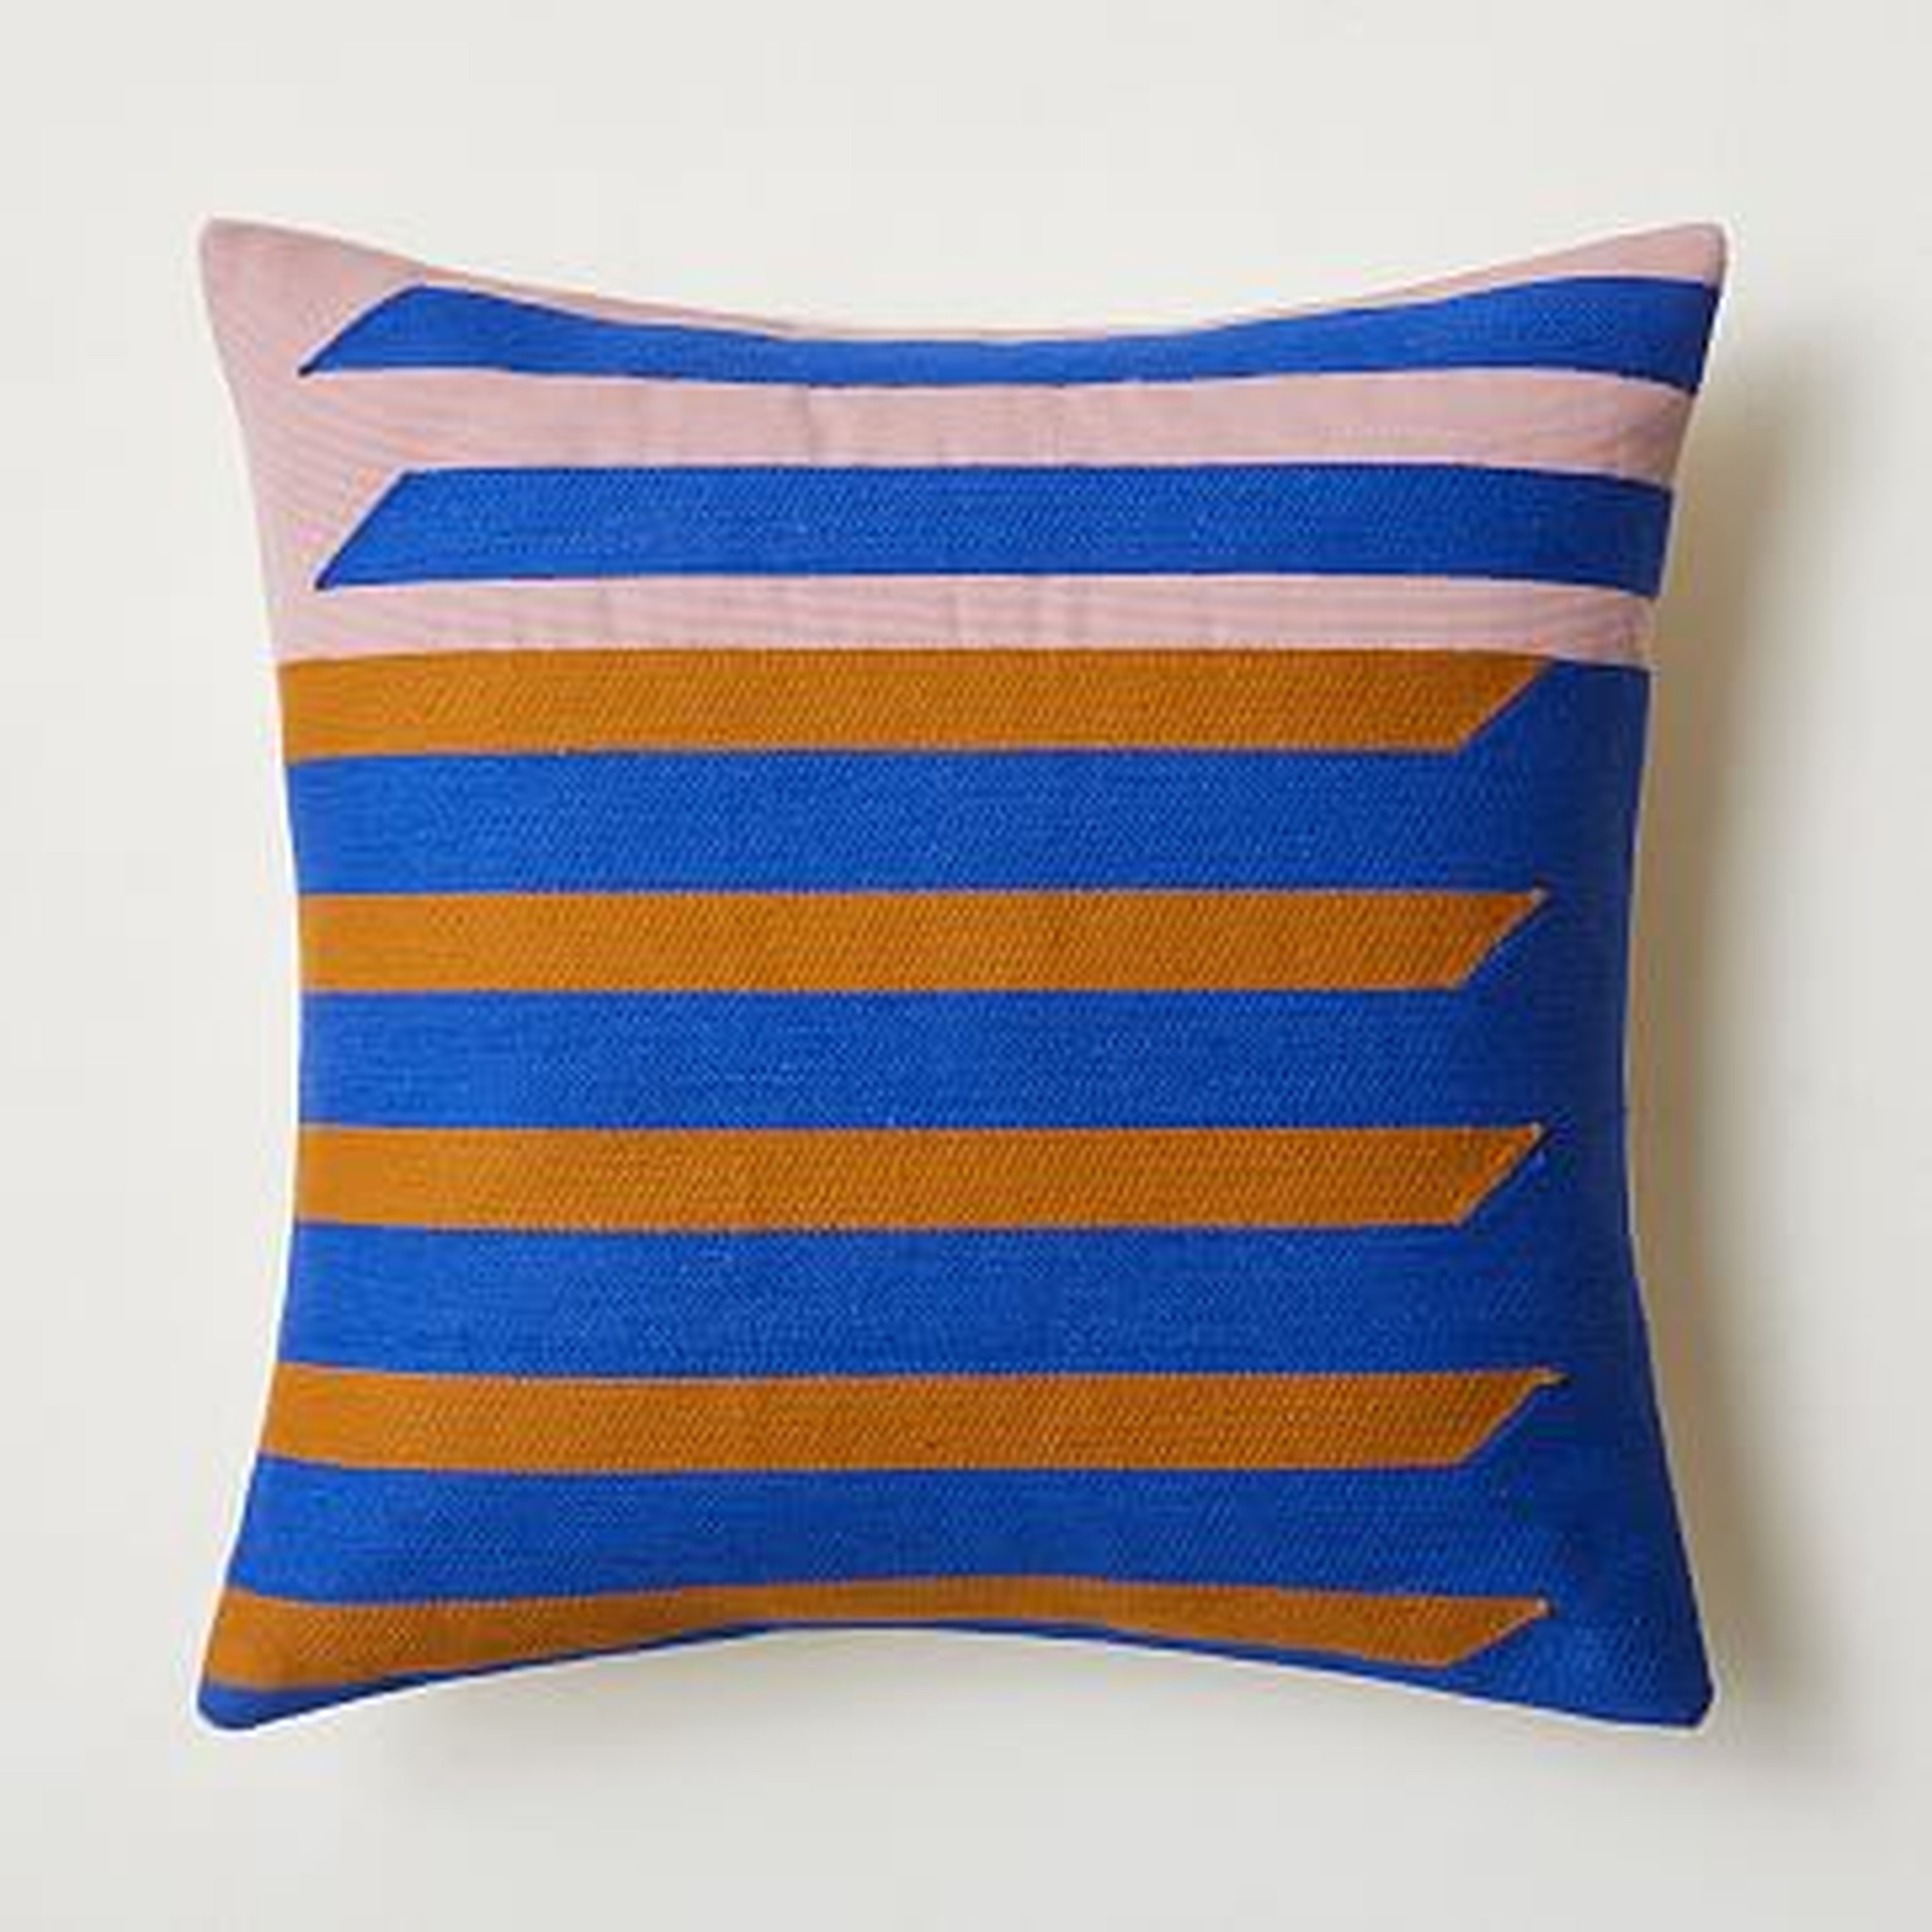 Crewel Shadow Bars Pillow Cover, Landscape Blue, 20"x20" - West Elm